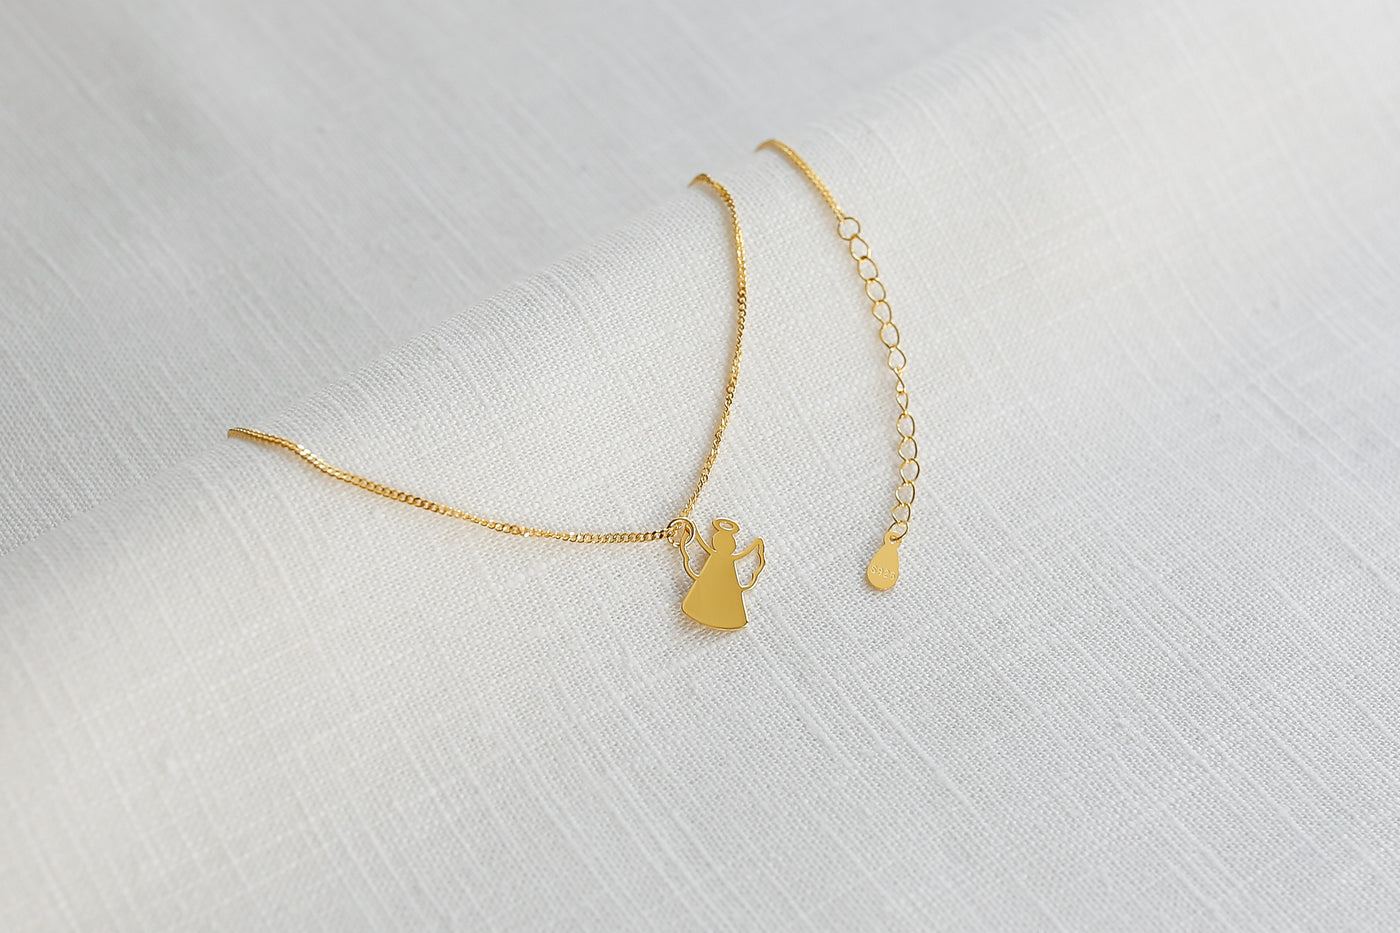 Feminine Halskette mit Engel Anhänger in Gold auf einem Stoff Tuch 